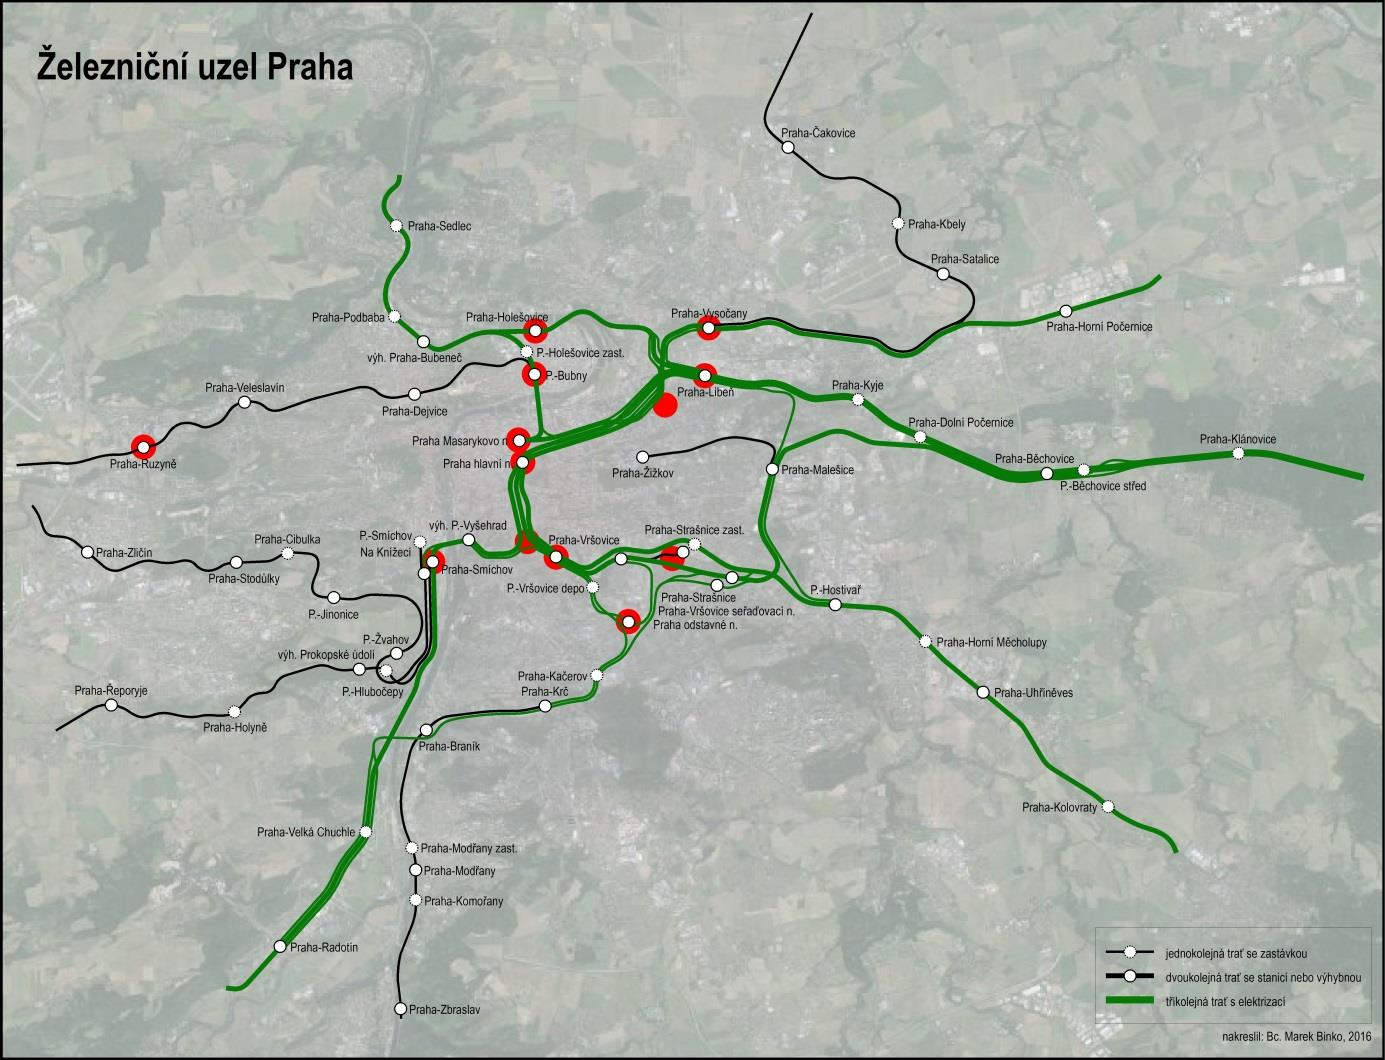 uzlu, který lze ohraničit stanicemi Bubny, Holešovice, Vysočany, Libeň, Vršovice, ONJ a Smíchov. Výjimkou je žst. Praha-Ruzyně, která by v budoucnu měla sloužit mj.